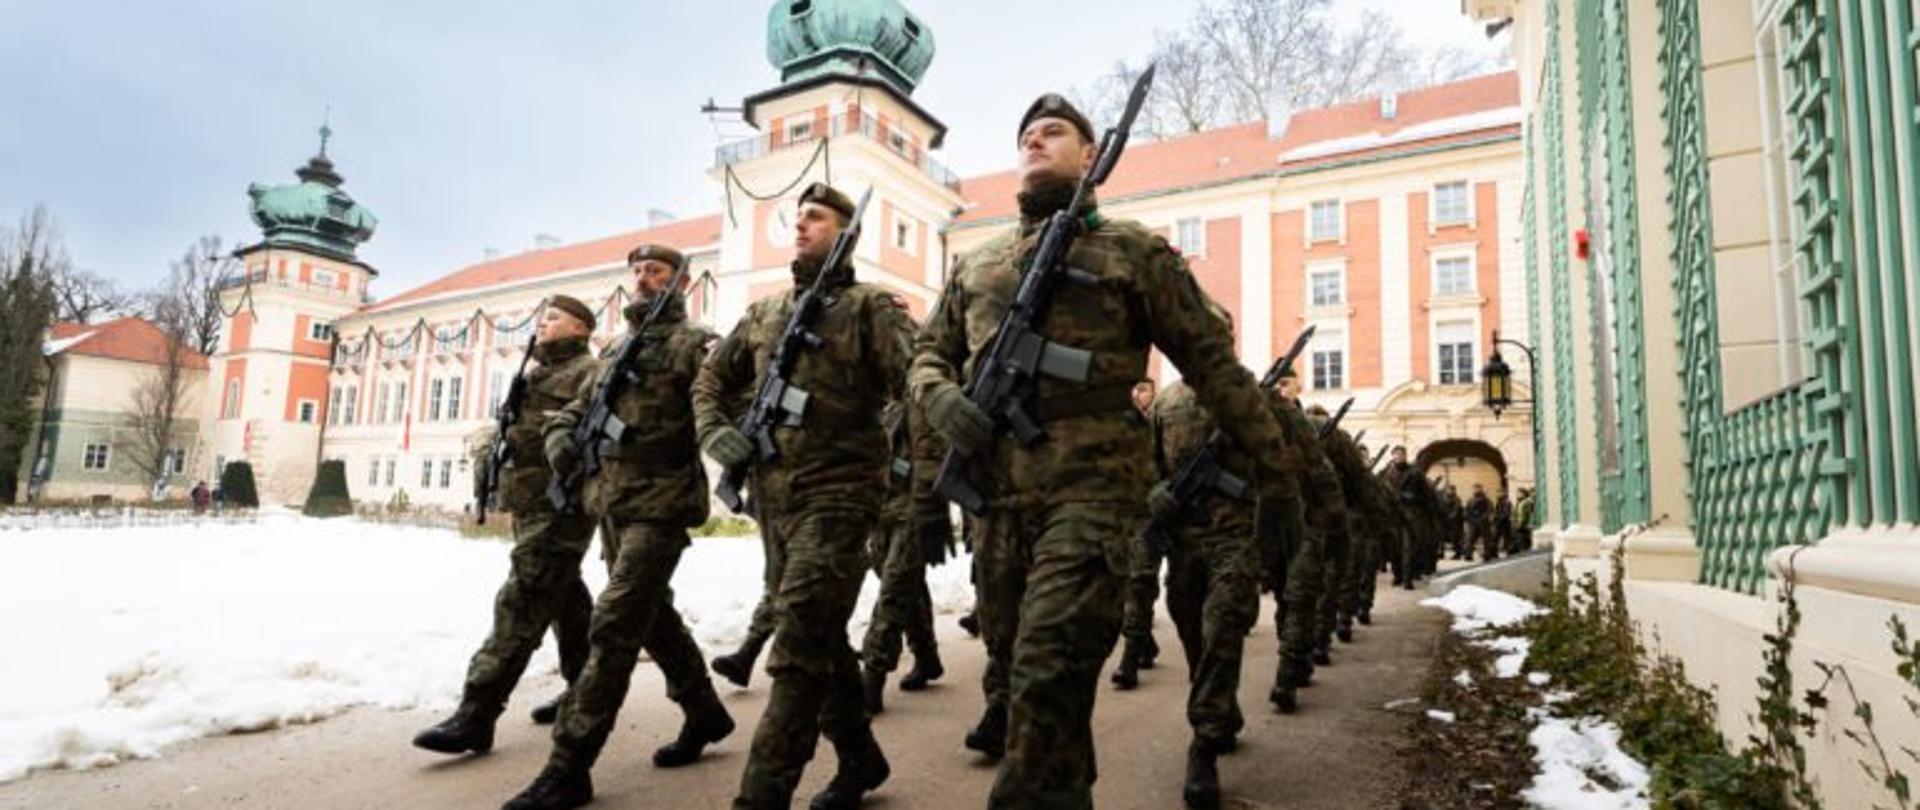 Żołnierze Wojsk Obrony Terytorialnej podczas uroczystej przysięgi w Łańcucie